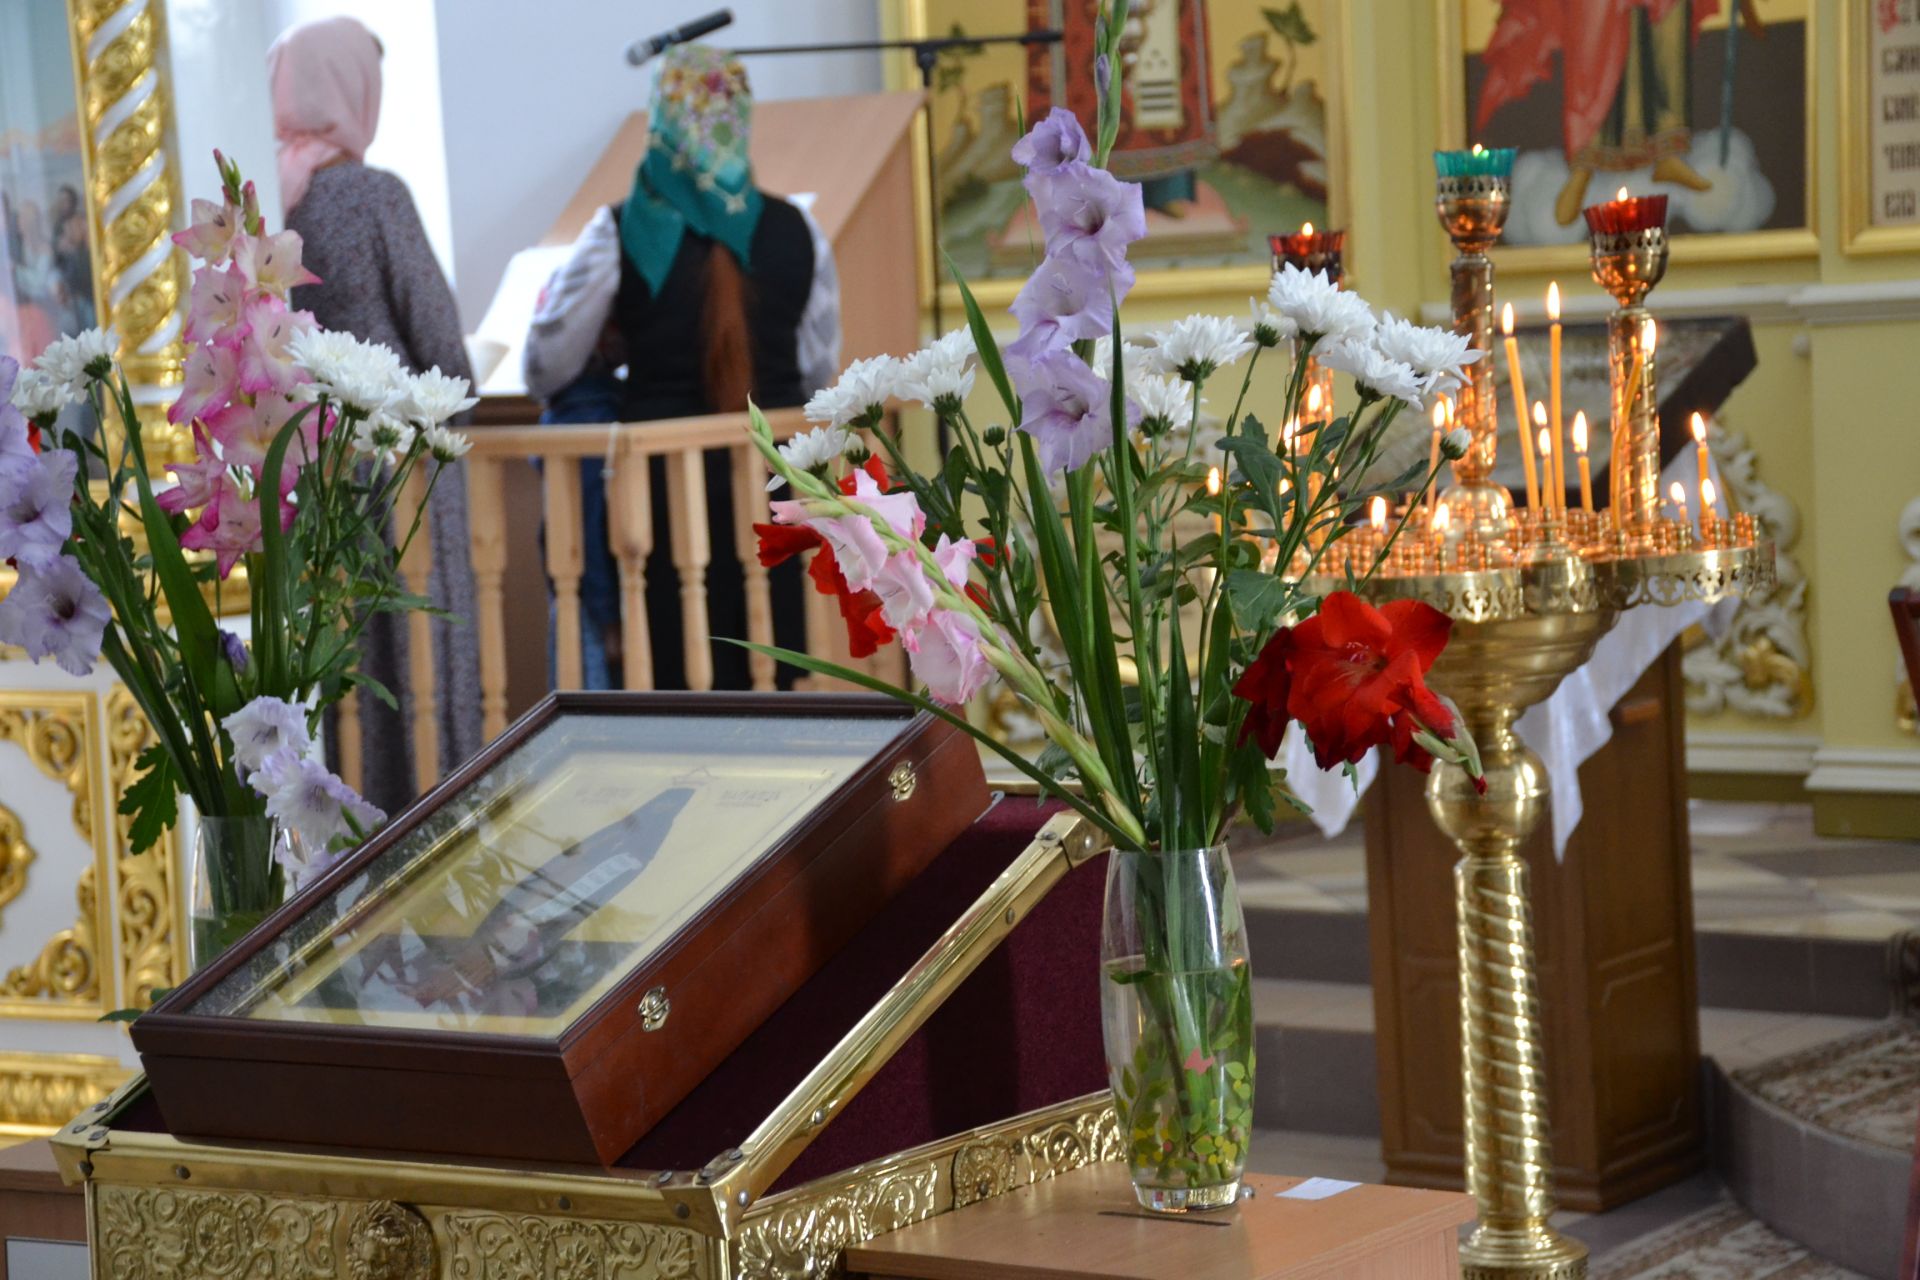 Сегодня православная церковь совершает празднование 100 летнего юбилея со дня мученической кончины, покровительницы Мензелинска, святой преподобномученицы Маргариты